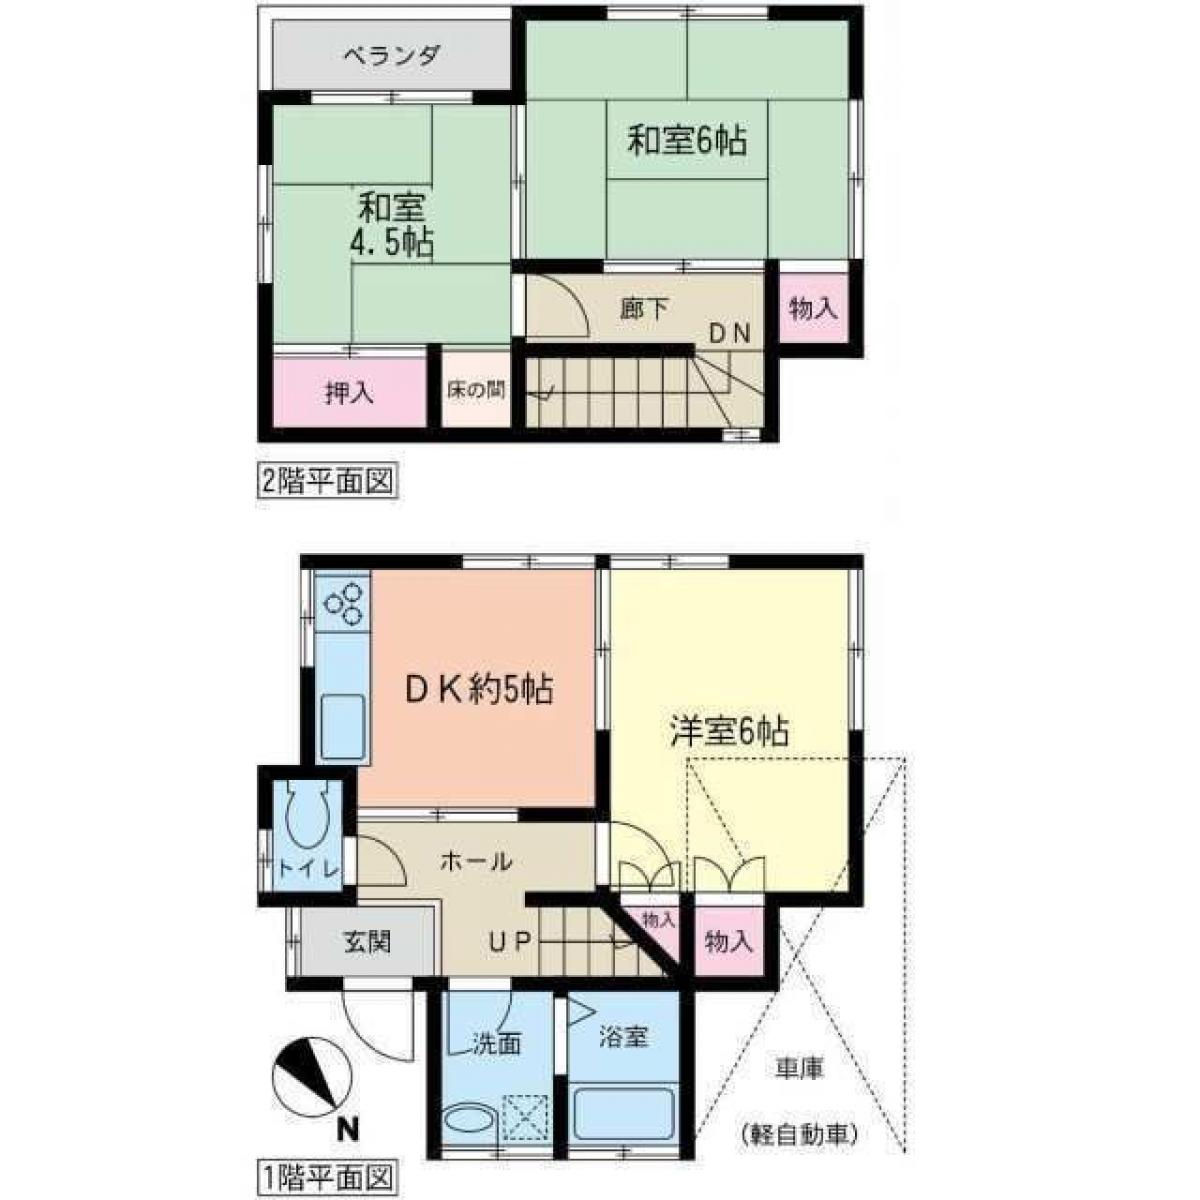 Picture of Home For Sale in Yokohama Shi Kanagawa Ku, Kanagawa, Japan